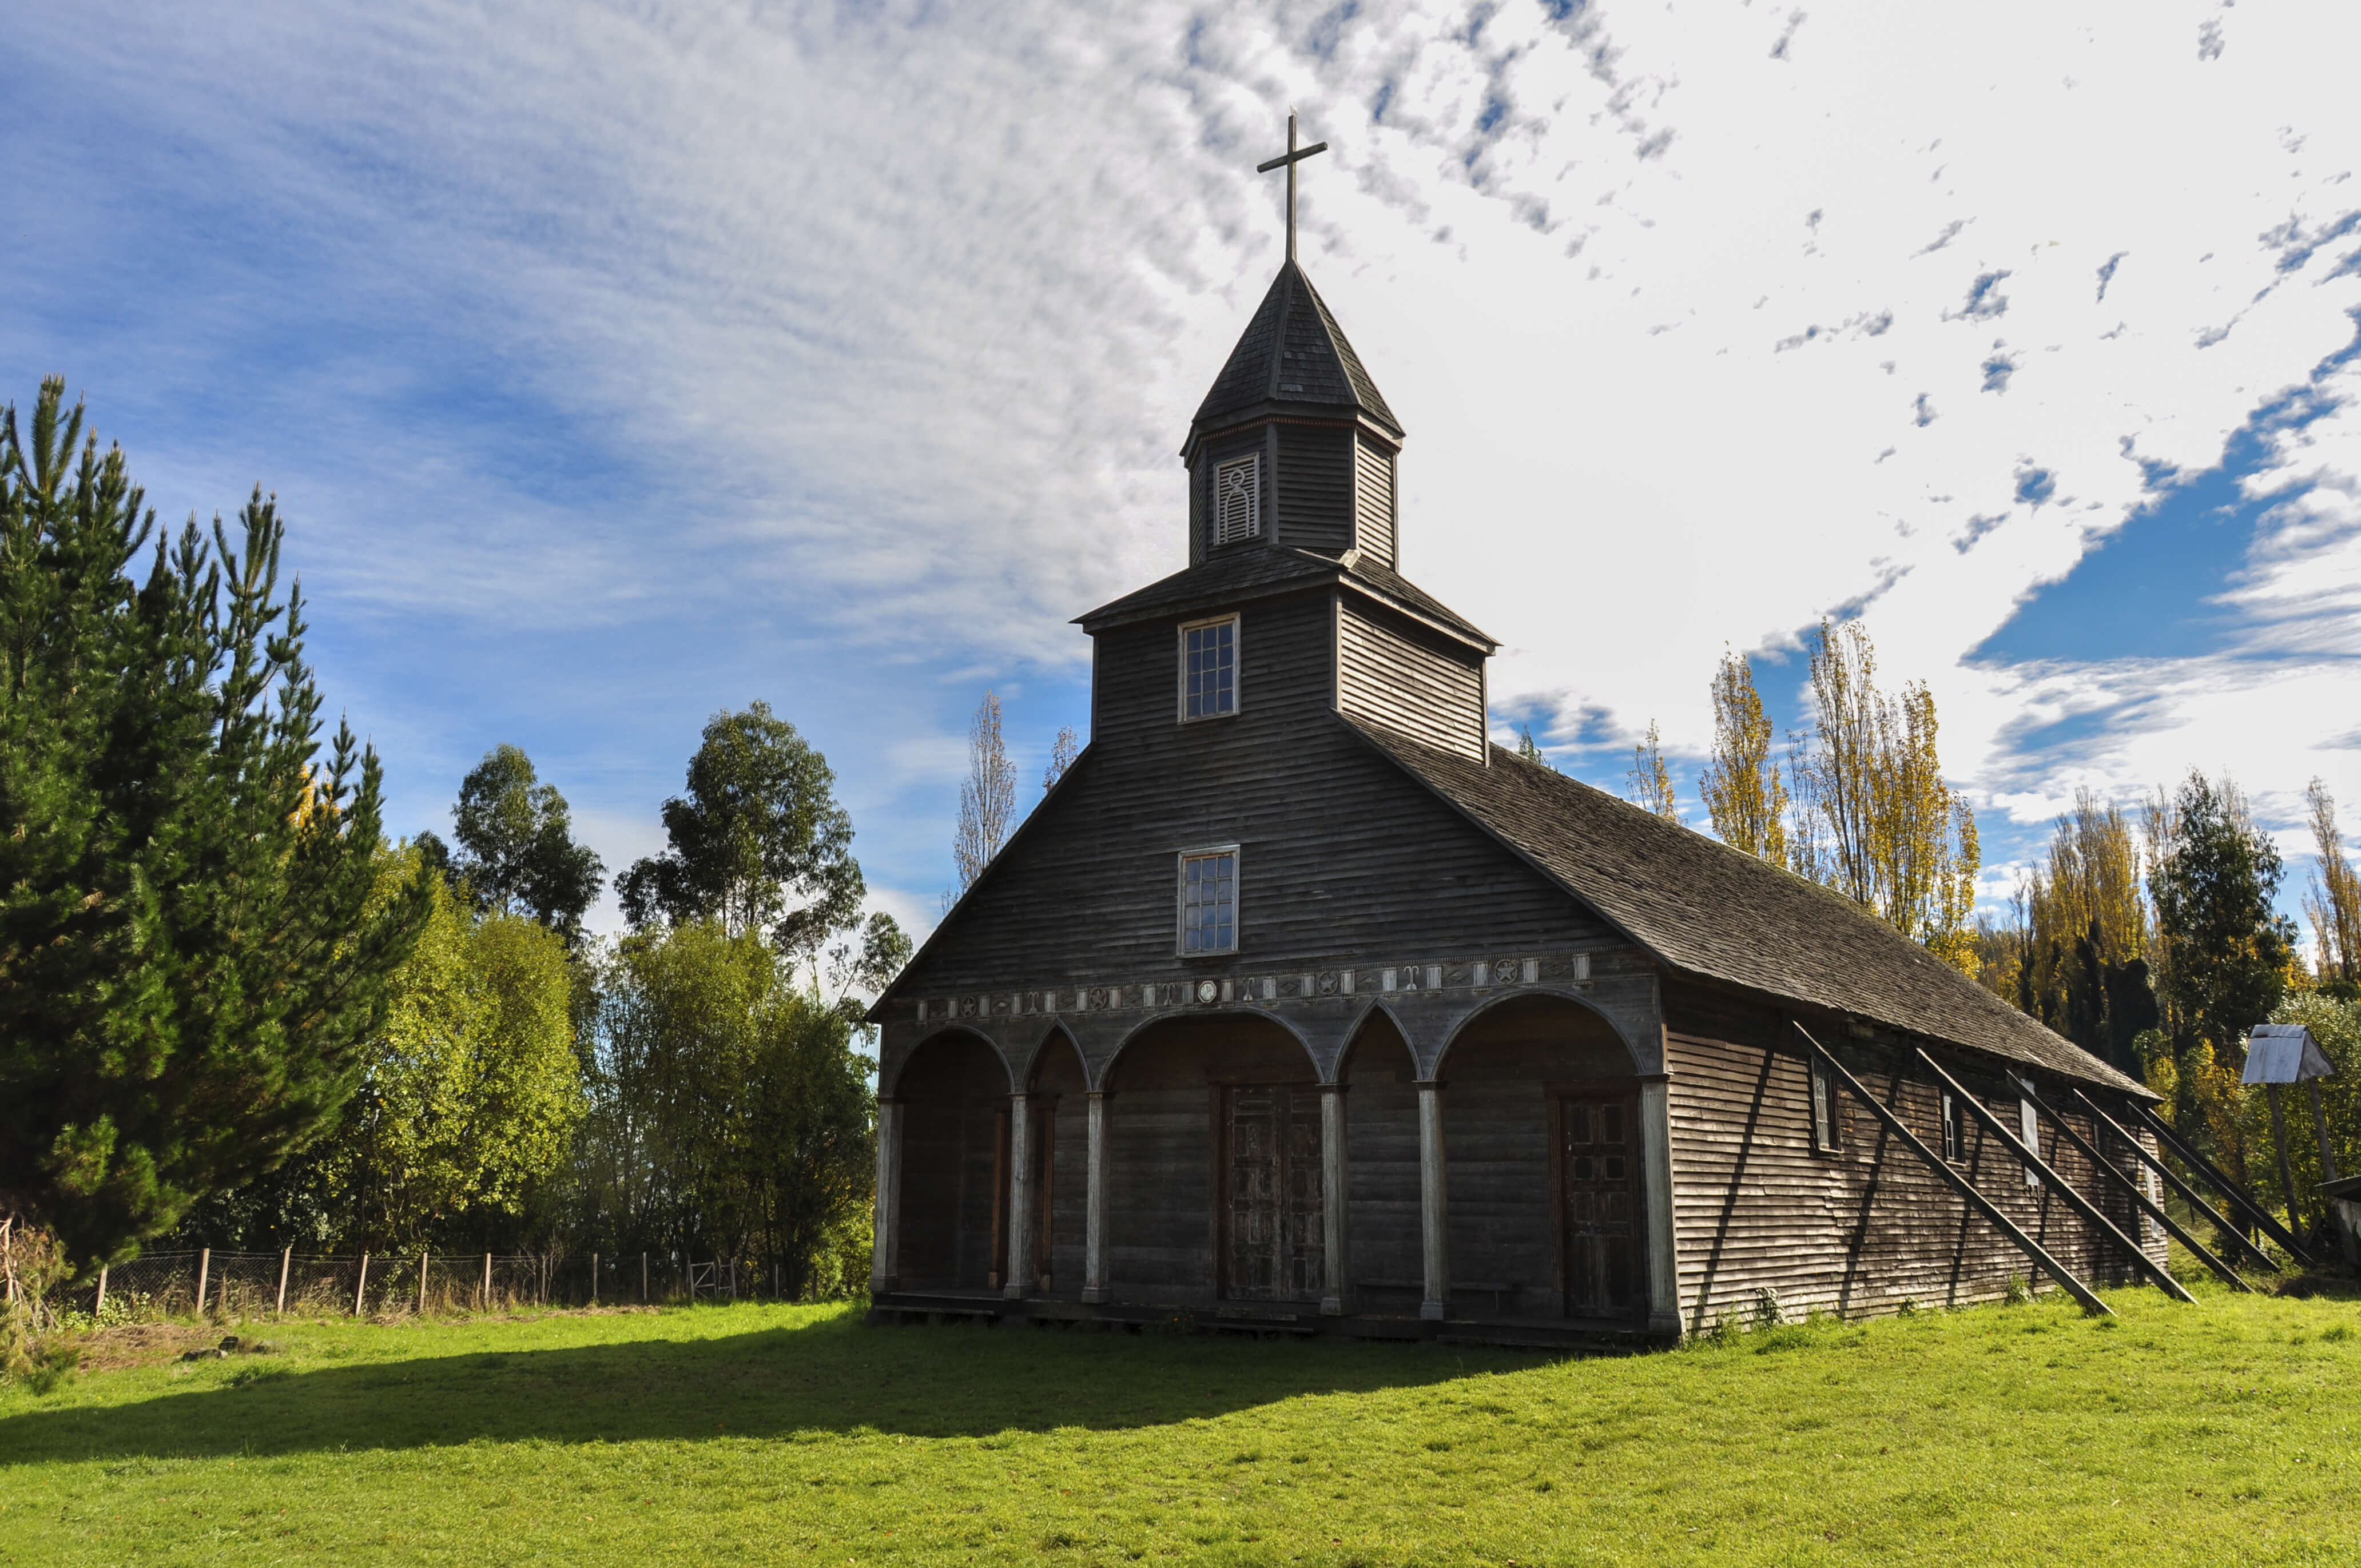 Iglesia en Chiloé, Chile